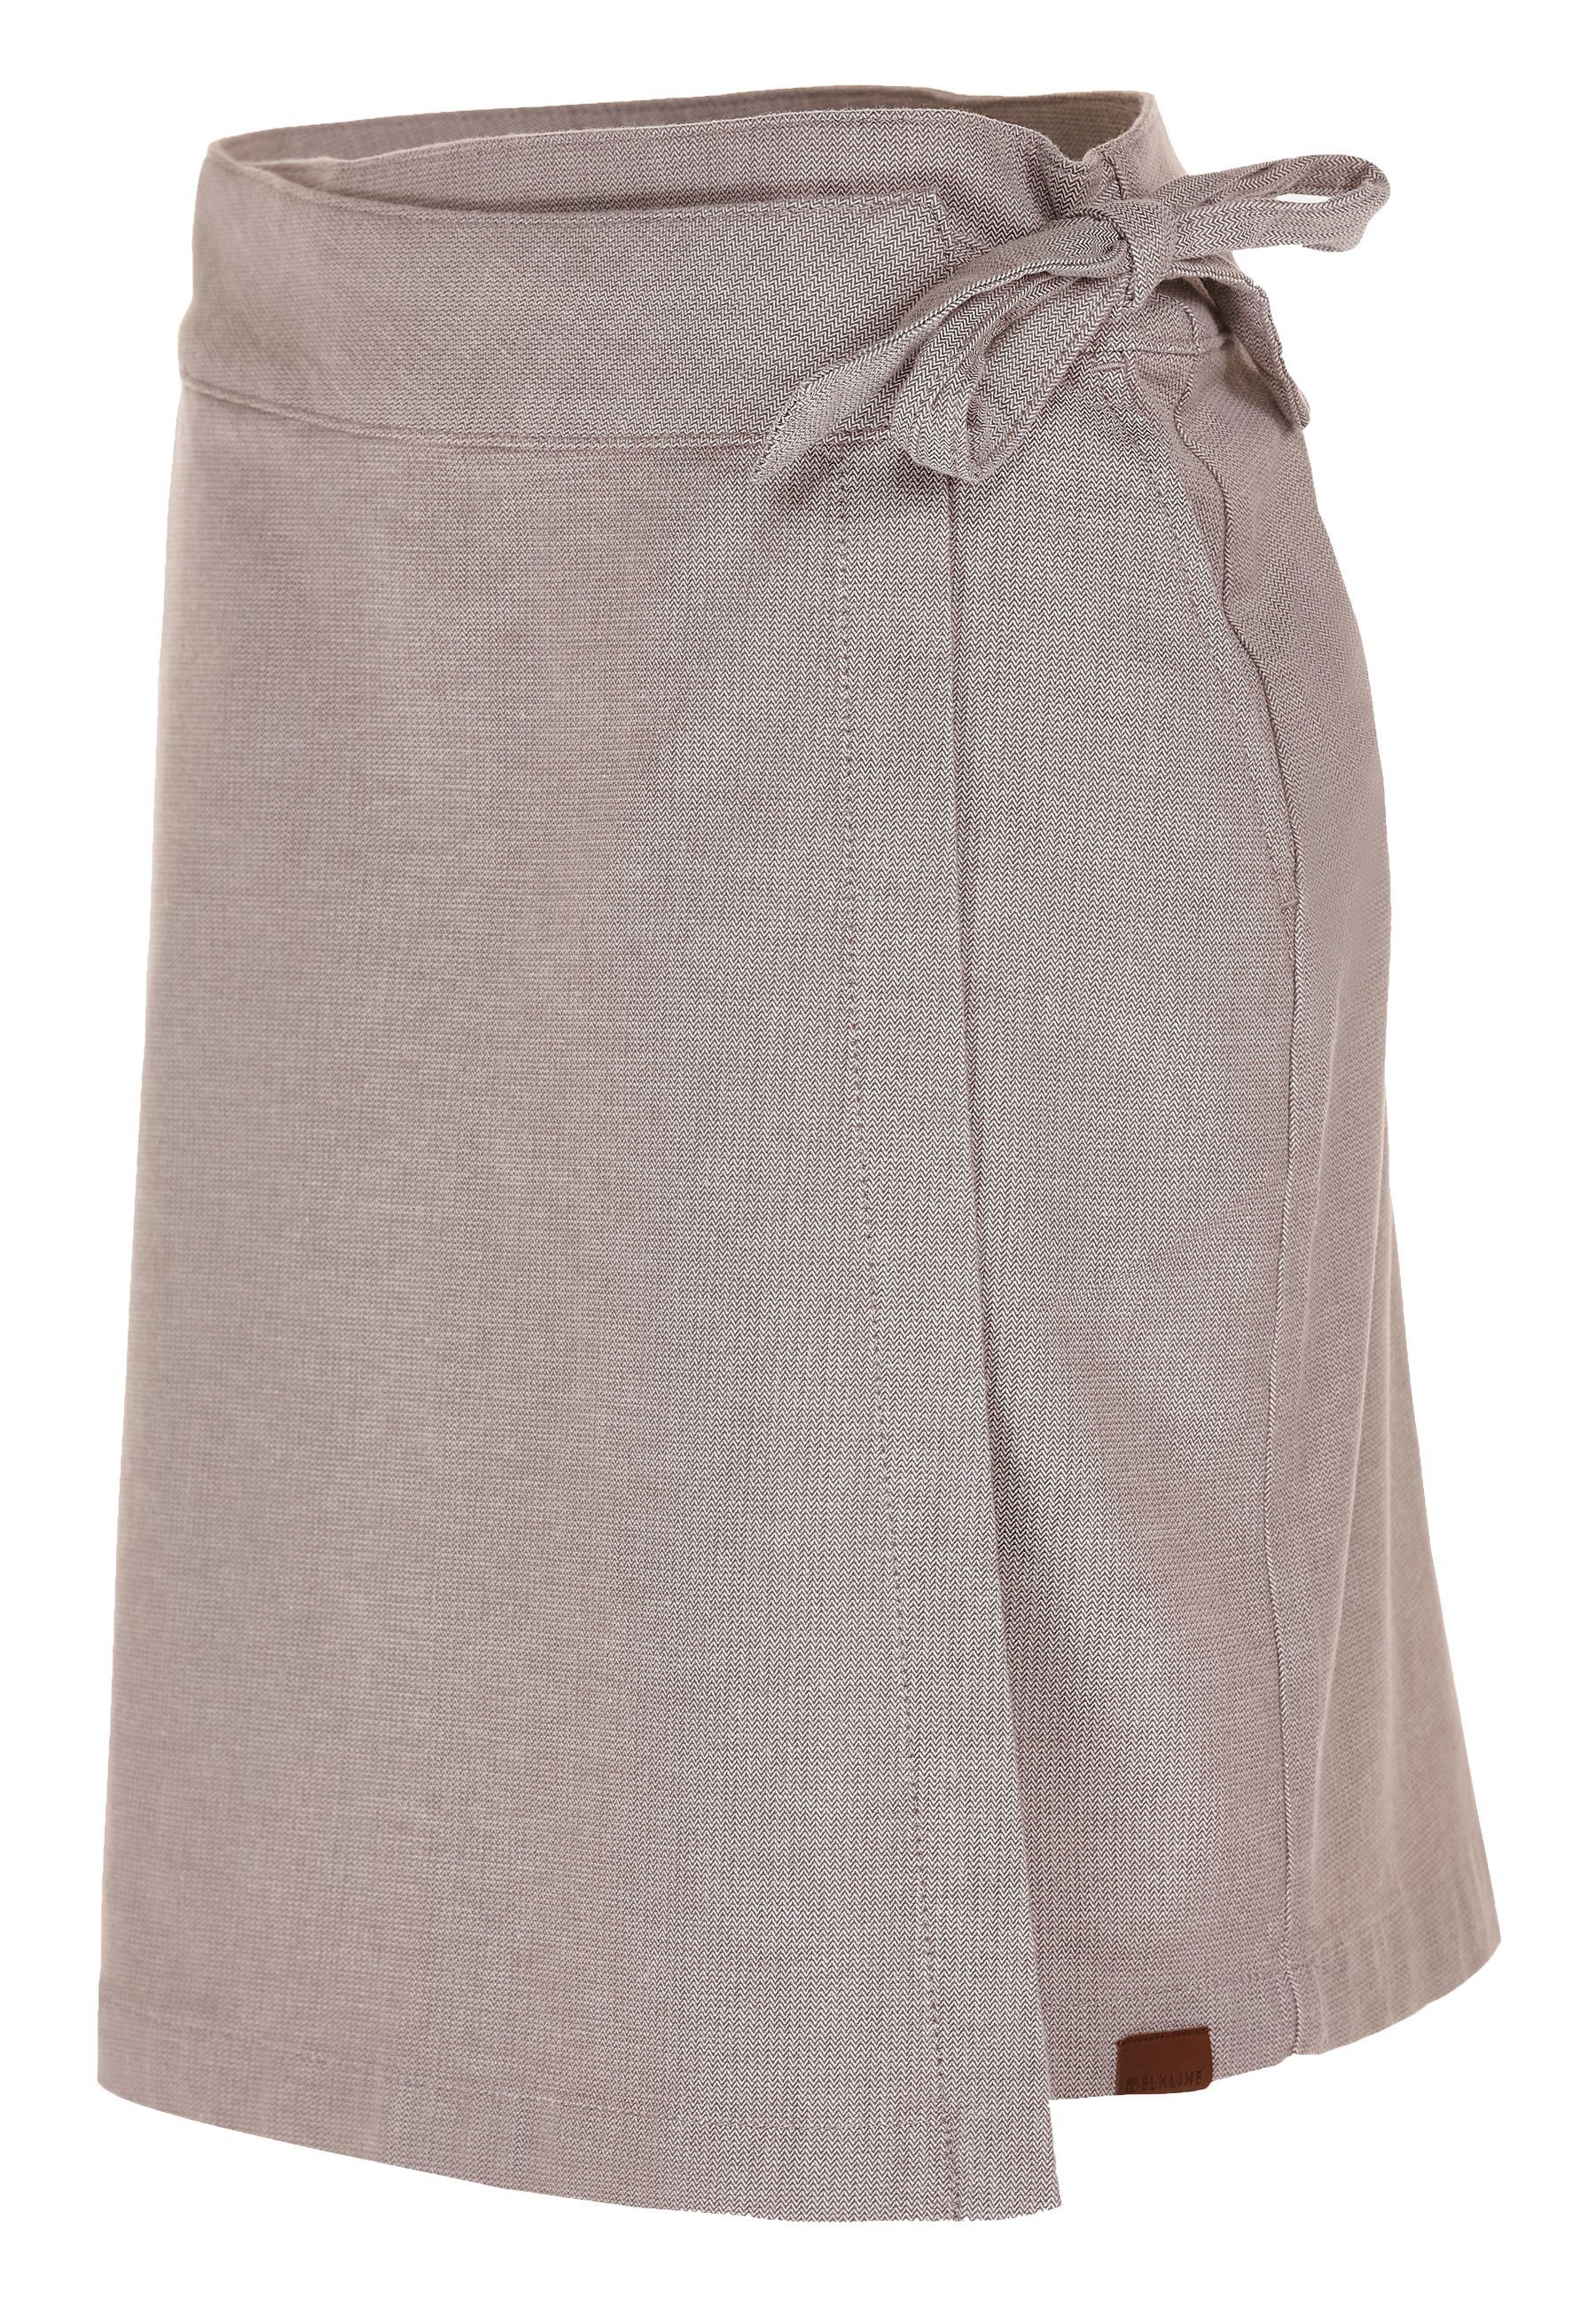 Dauerschleife mit Sommerrock Taschen - Elkline khaki white kurzer Rock